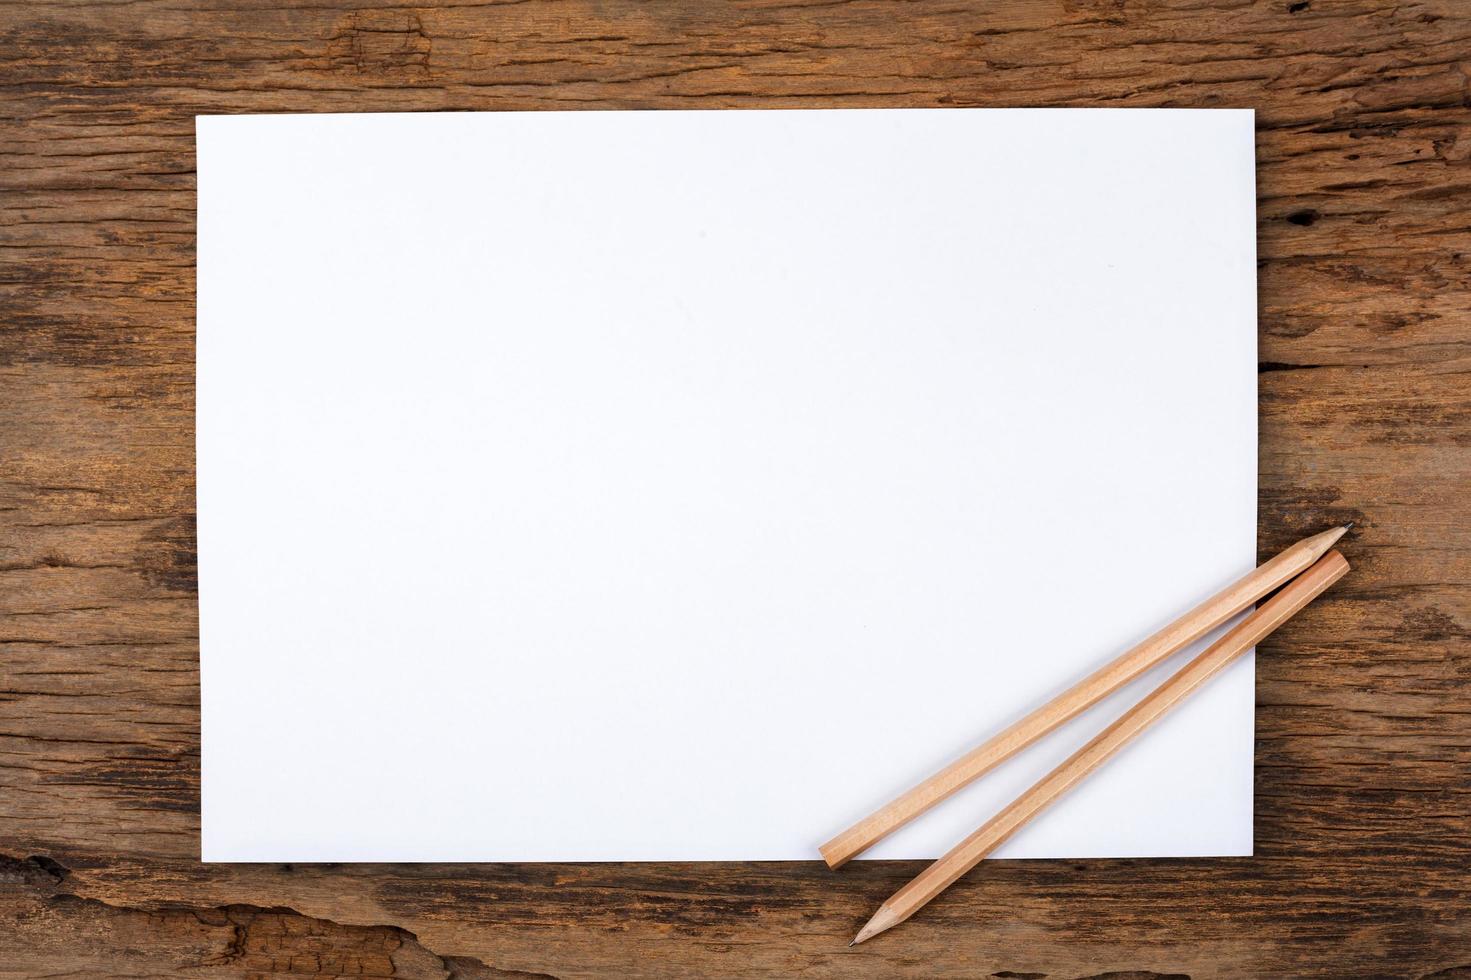 papel blanco con lápiz sobre mesa de madera foto